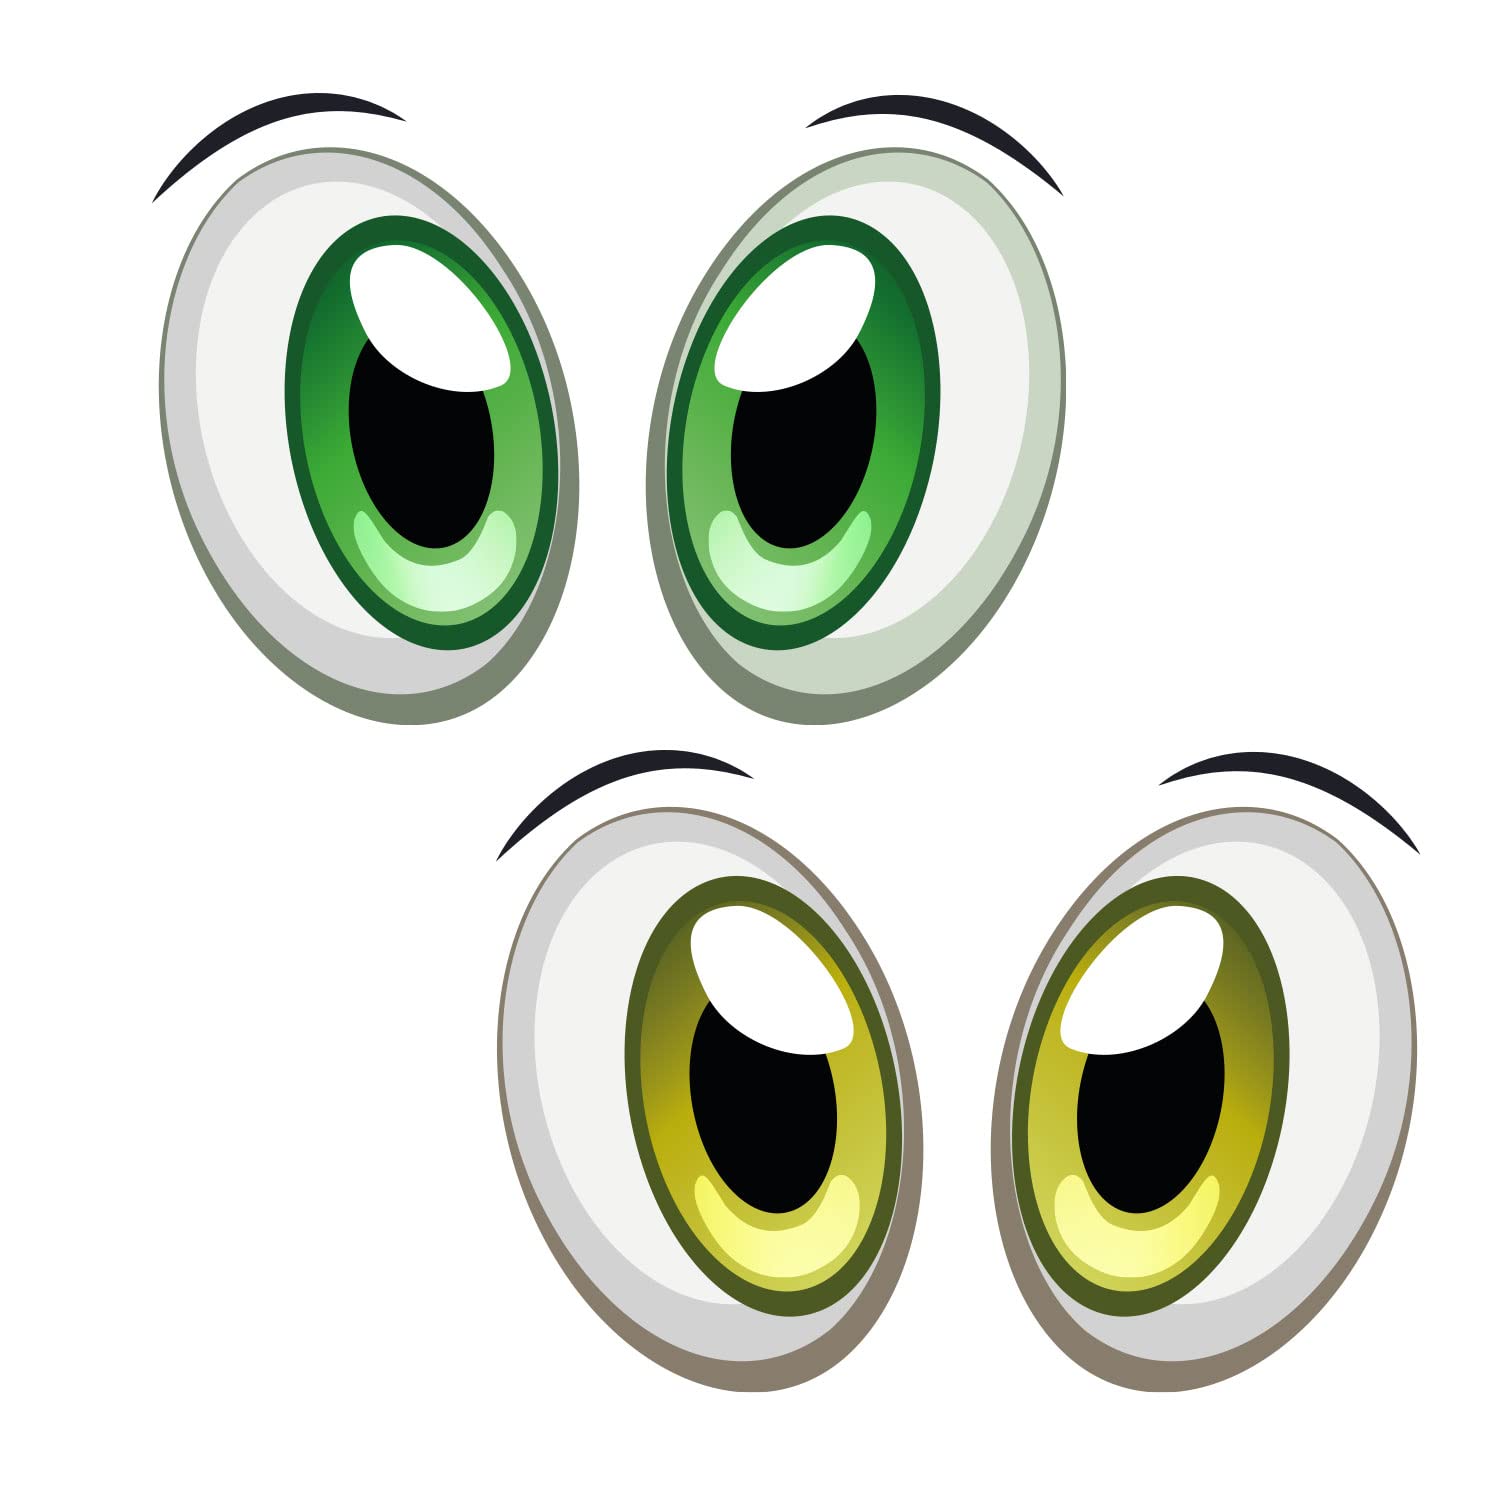 Aufkleber Augen-Paar für Saugroboter Mähroboter Auto oder Staubsauger - selbstklebend - Spaßartikel - Dekorativ - Lustig - wetterfest - kfz_741 von younikat